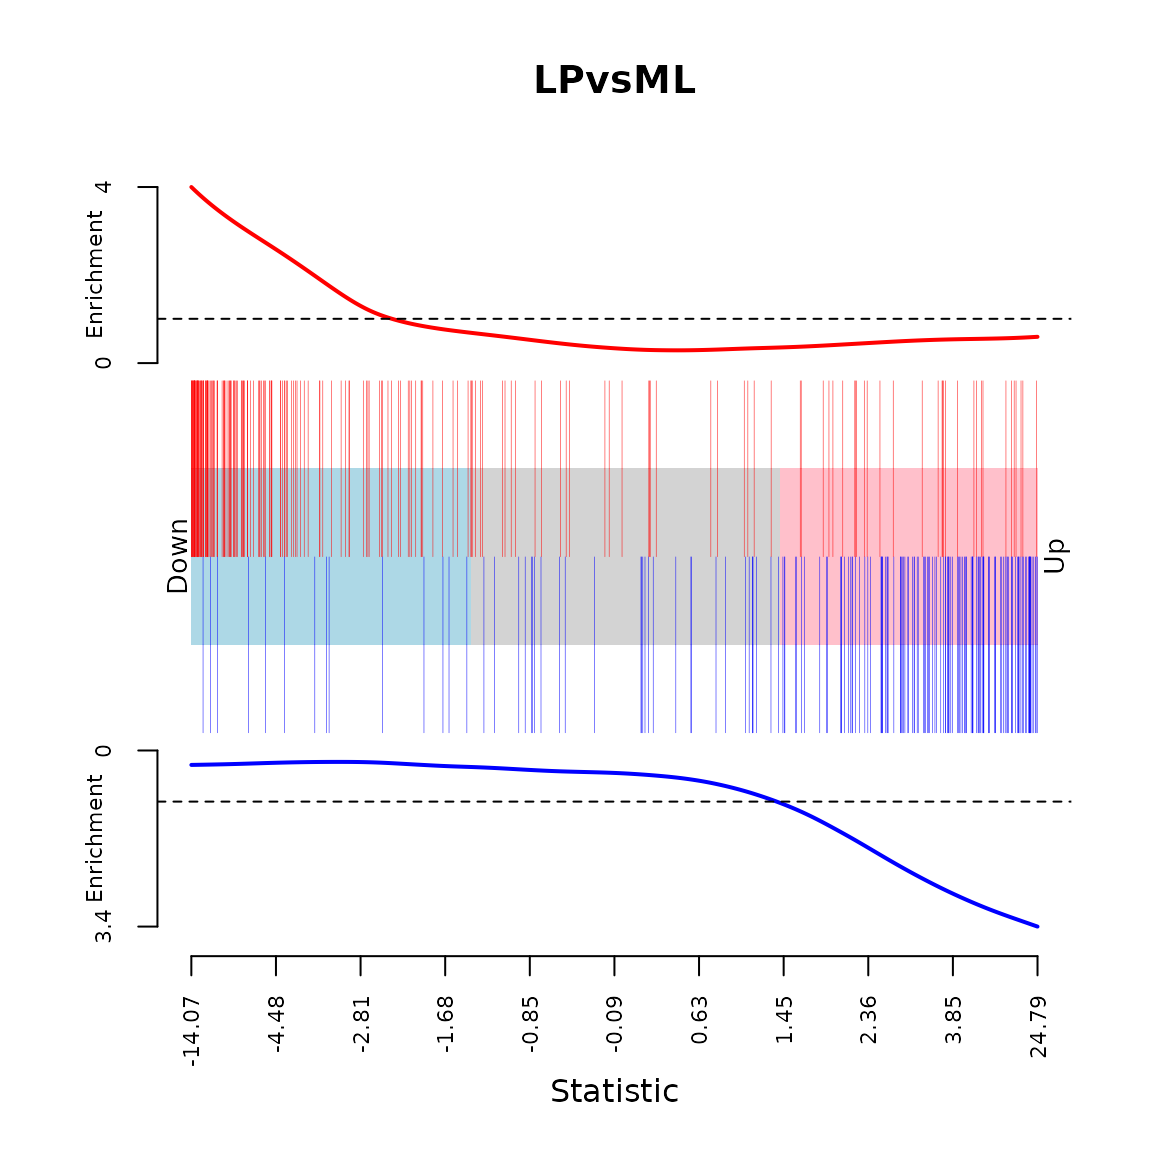 `LIM_MAMMARY_LUMINAL_MATURE_UP` （红色条形，图表上方）和`LIM_MAMMARY_LUMINAL_MATURE_DN`（蓝色条形，图表下方）基因集在LP和ML的对比中的条码图，每个基因集都有一条富集线展示了竖直条形在图表每部分的相对富集程度。Lim等人的实验[@Lim:BreastCancerRes:2010]与我们的非常相似，用了相同的方式分选获取细胞群，只是他们使用了微阵列而不是RNA-seq来测定基因表达。需要注意上调基因集发生下调而下调基因集发生上调的逆相关性来自于对比的设定方式（LP相比于ML），如果将其对调，方向性将会吻合。